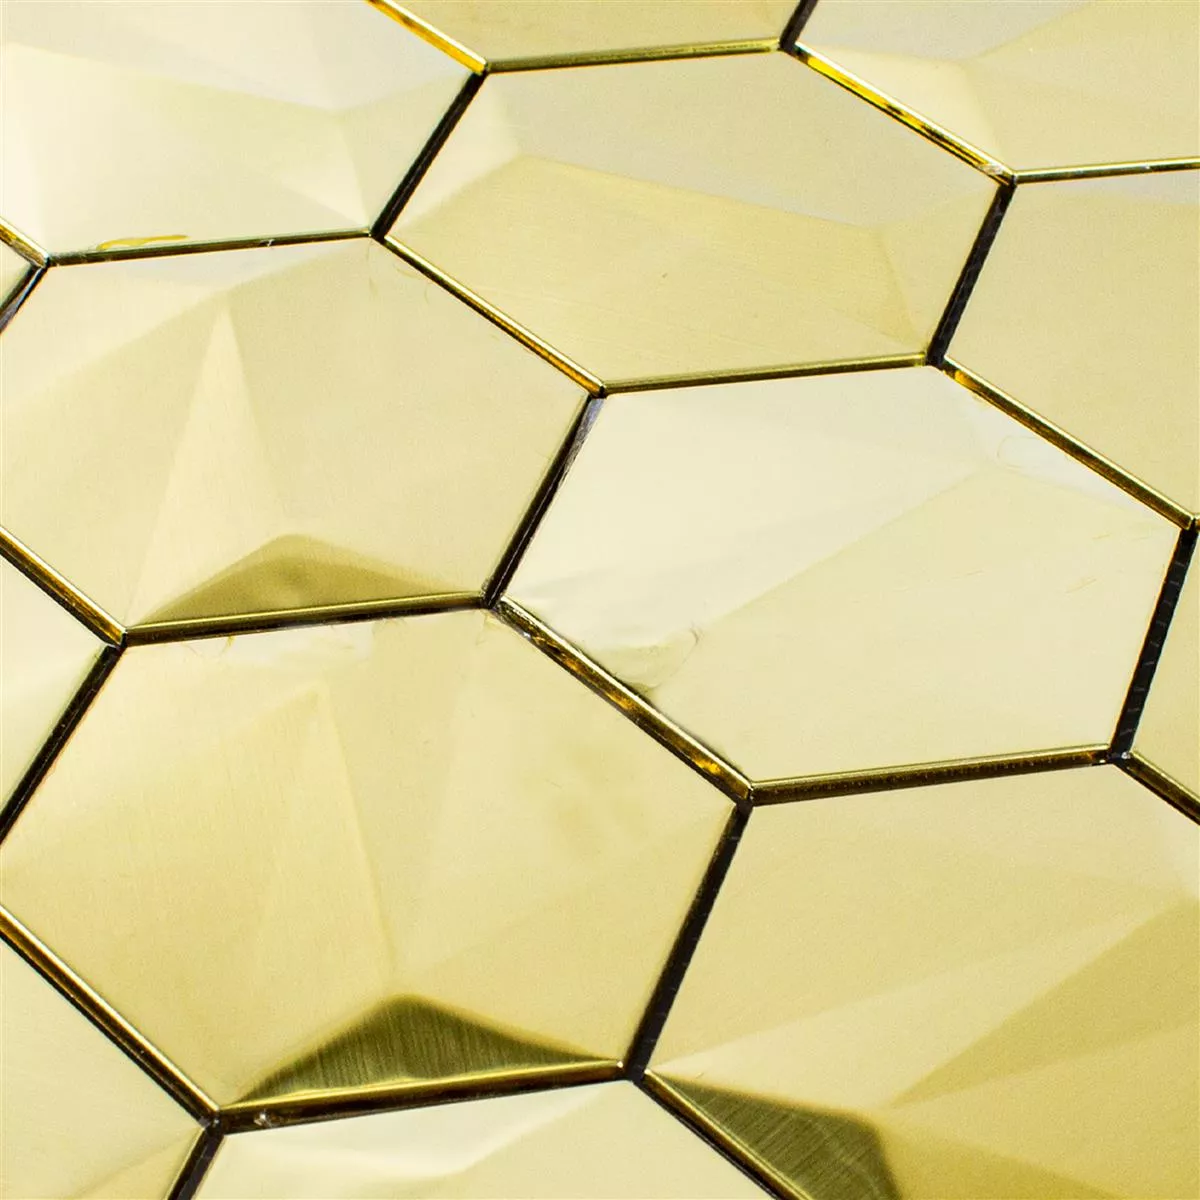 Edelstahl Mosaikfliesen Durango Hexagon 3D Gold